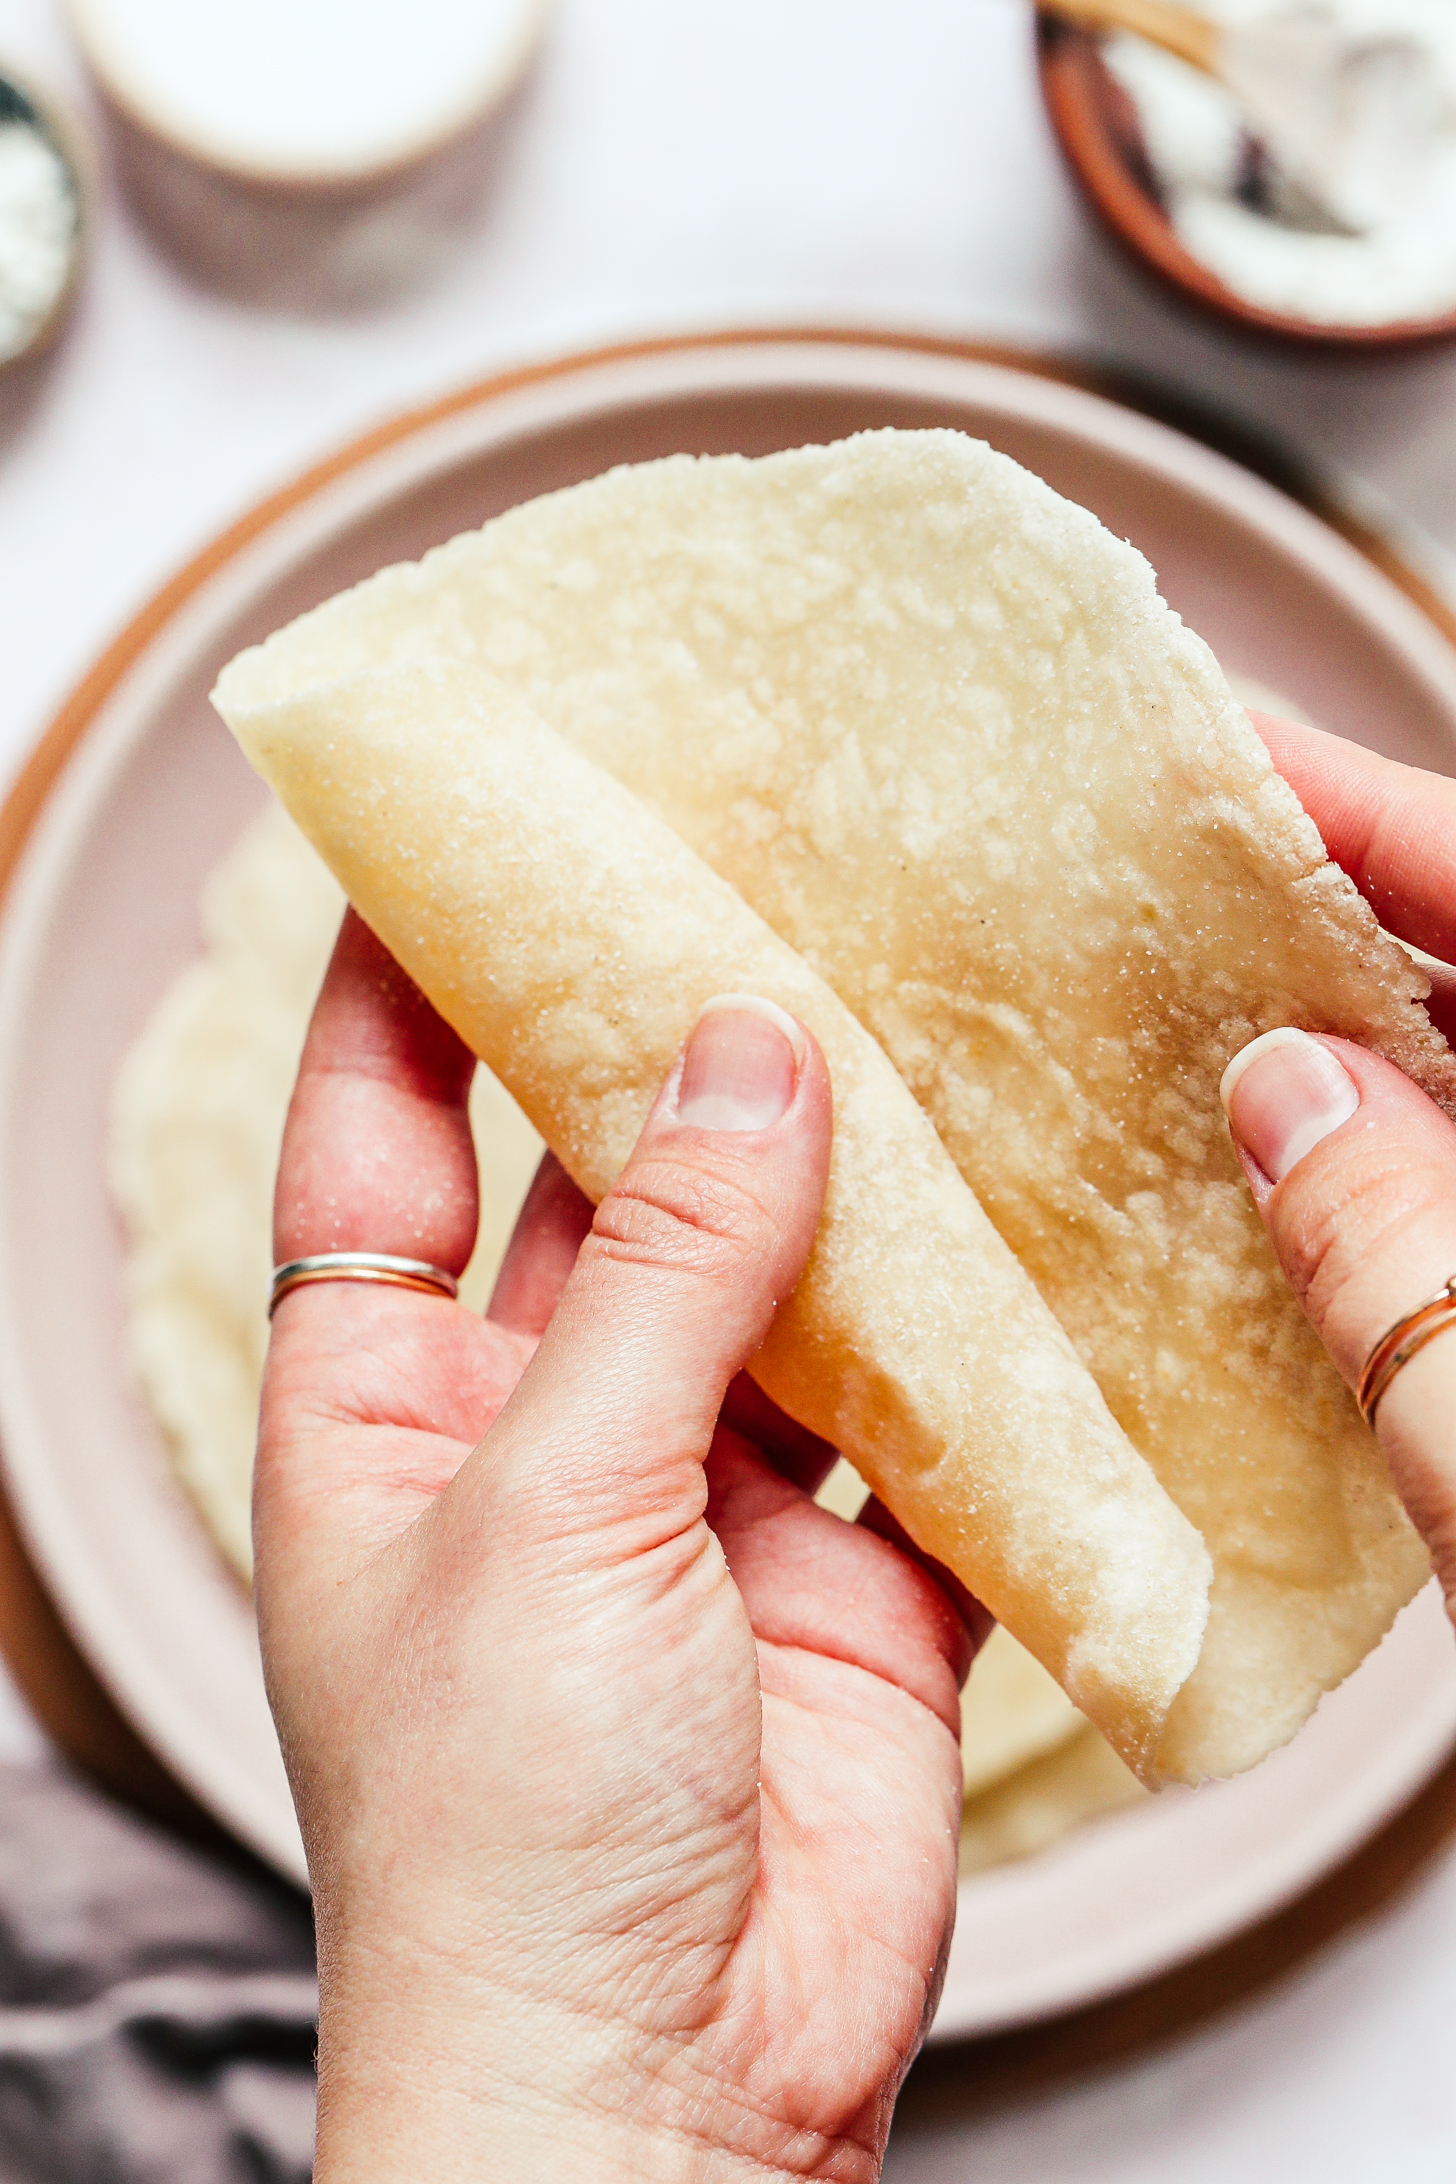 Rolling up a gluten-free flour tortilla made with cassava flour